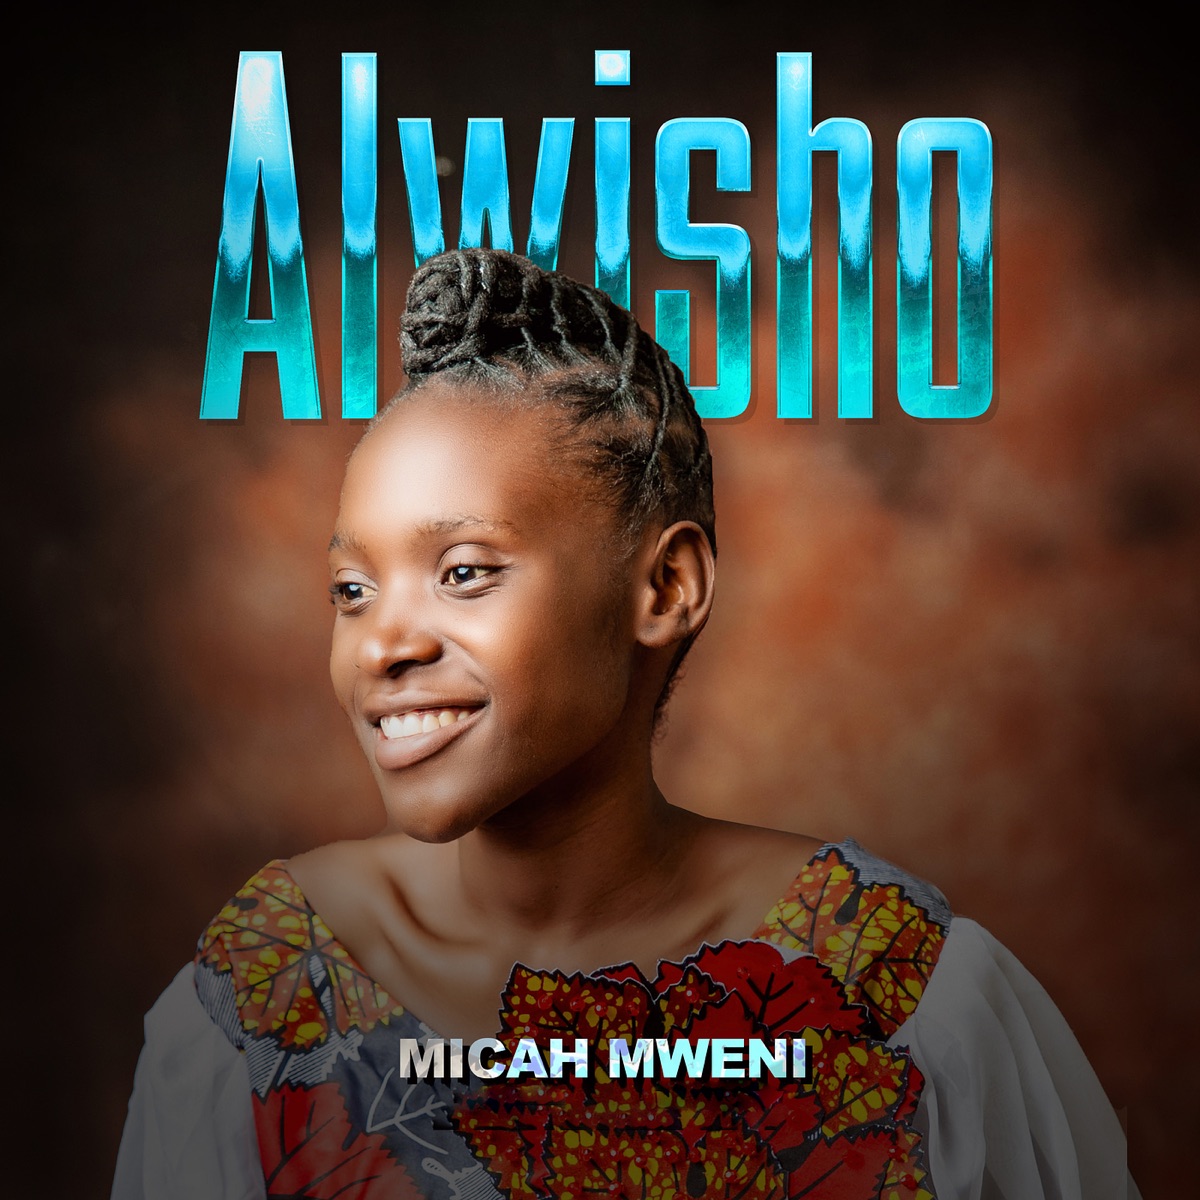 Micah Mweni